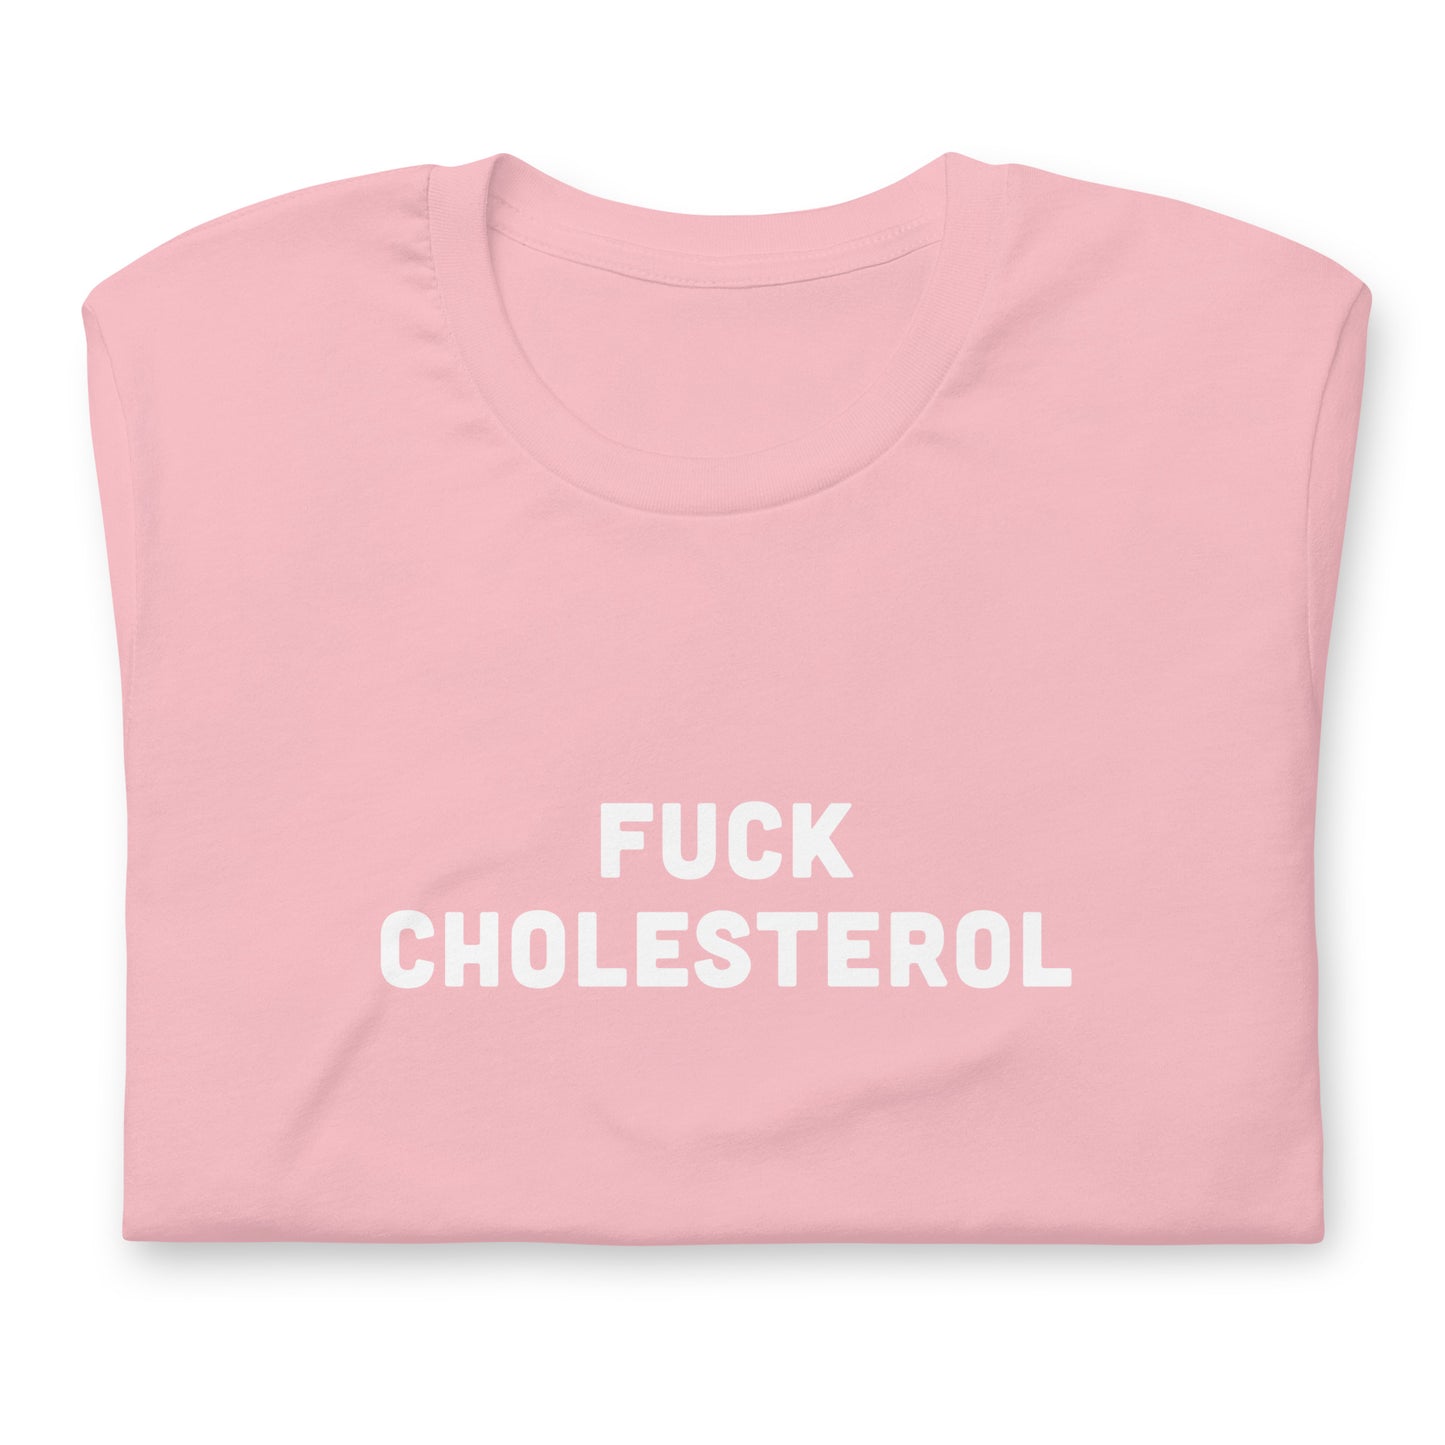 Fuck Cholesterol T-Shirt Size S Color Asphalt